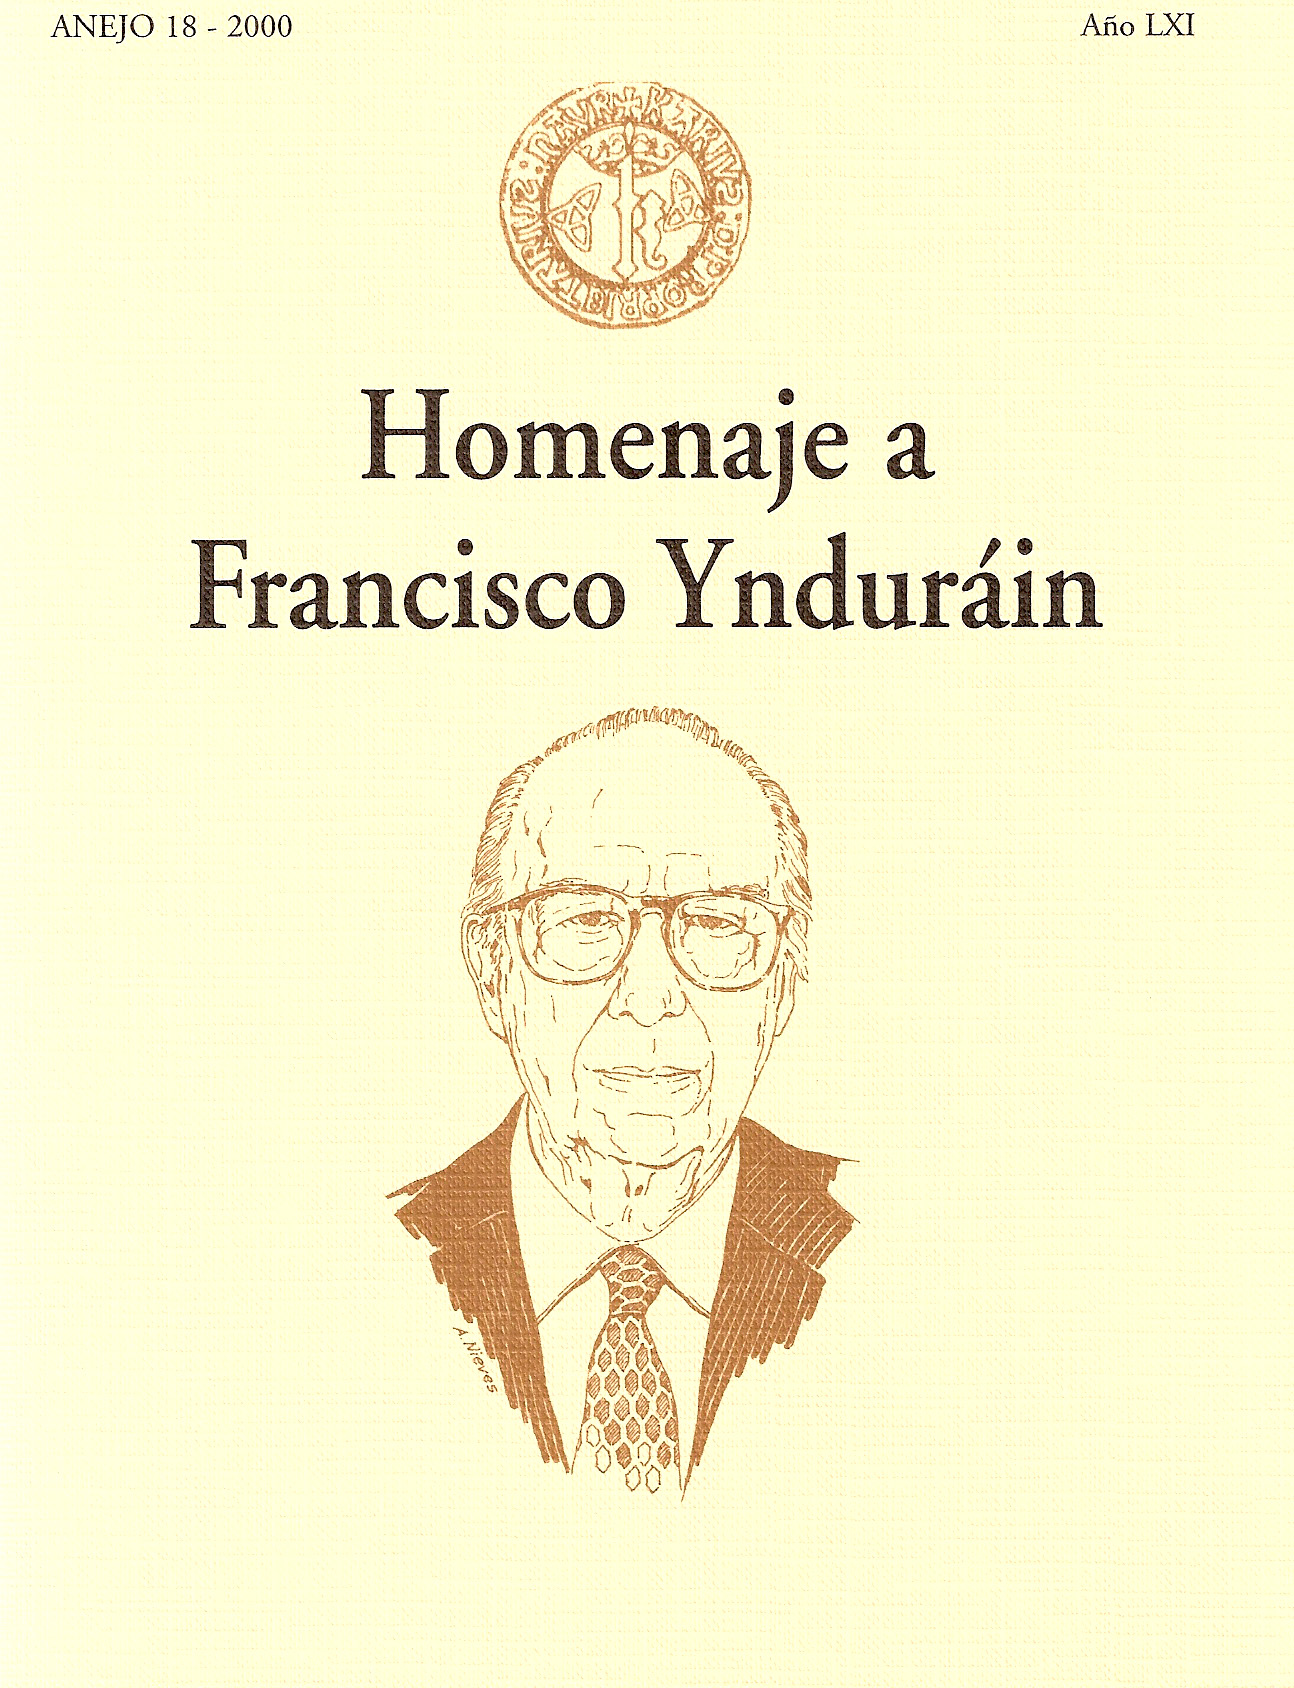 Libro homenaje a Francisco Ynduráin, 2000. @Archivo de Bilaketa